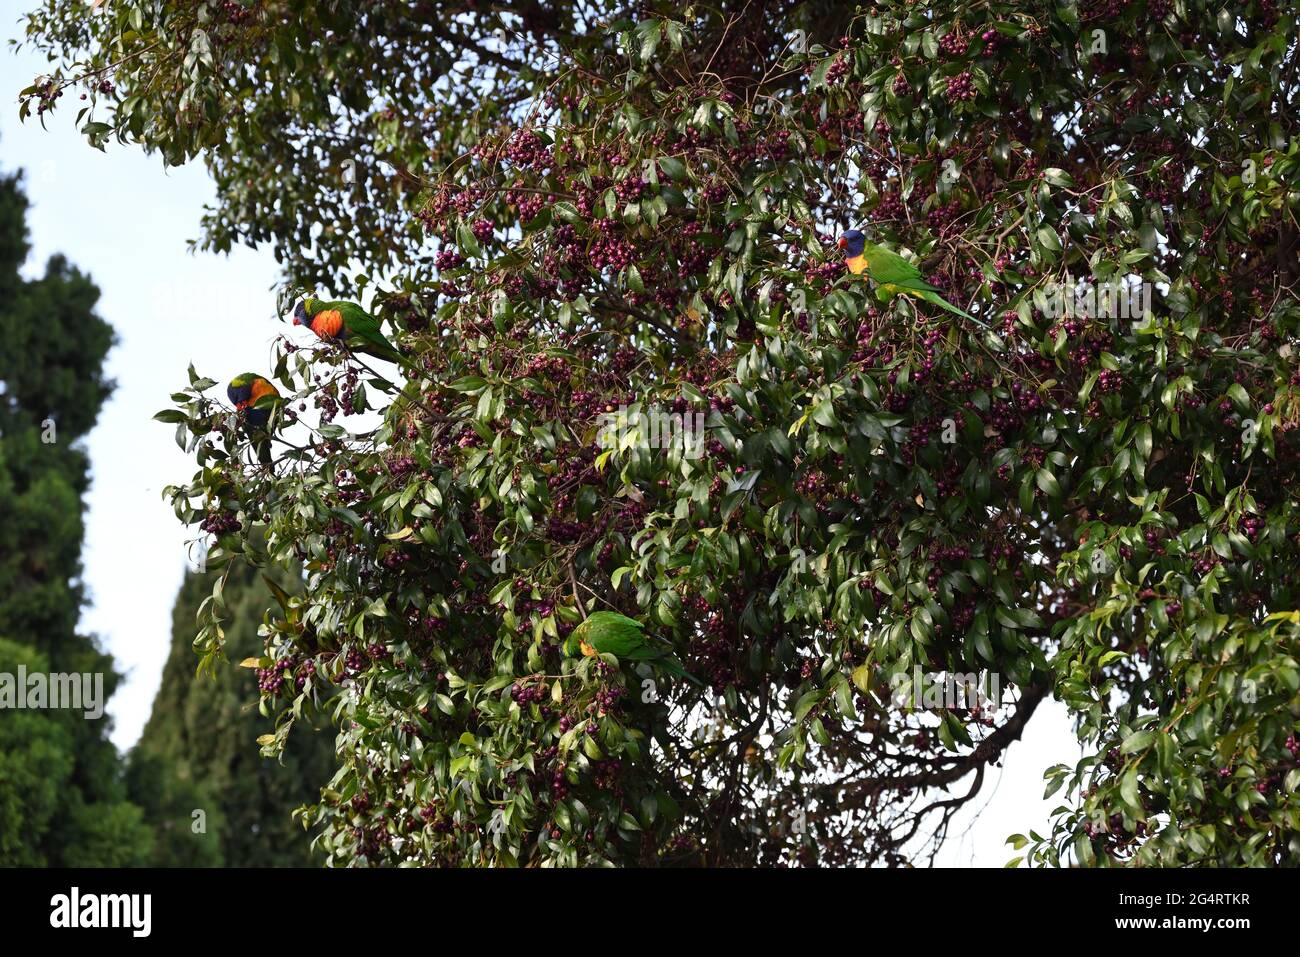 Cuatro loros arcoiris en un árbol lleno de bayas Foto de stock